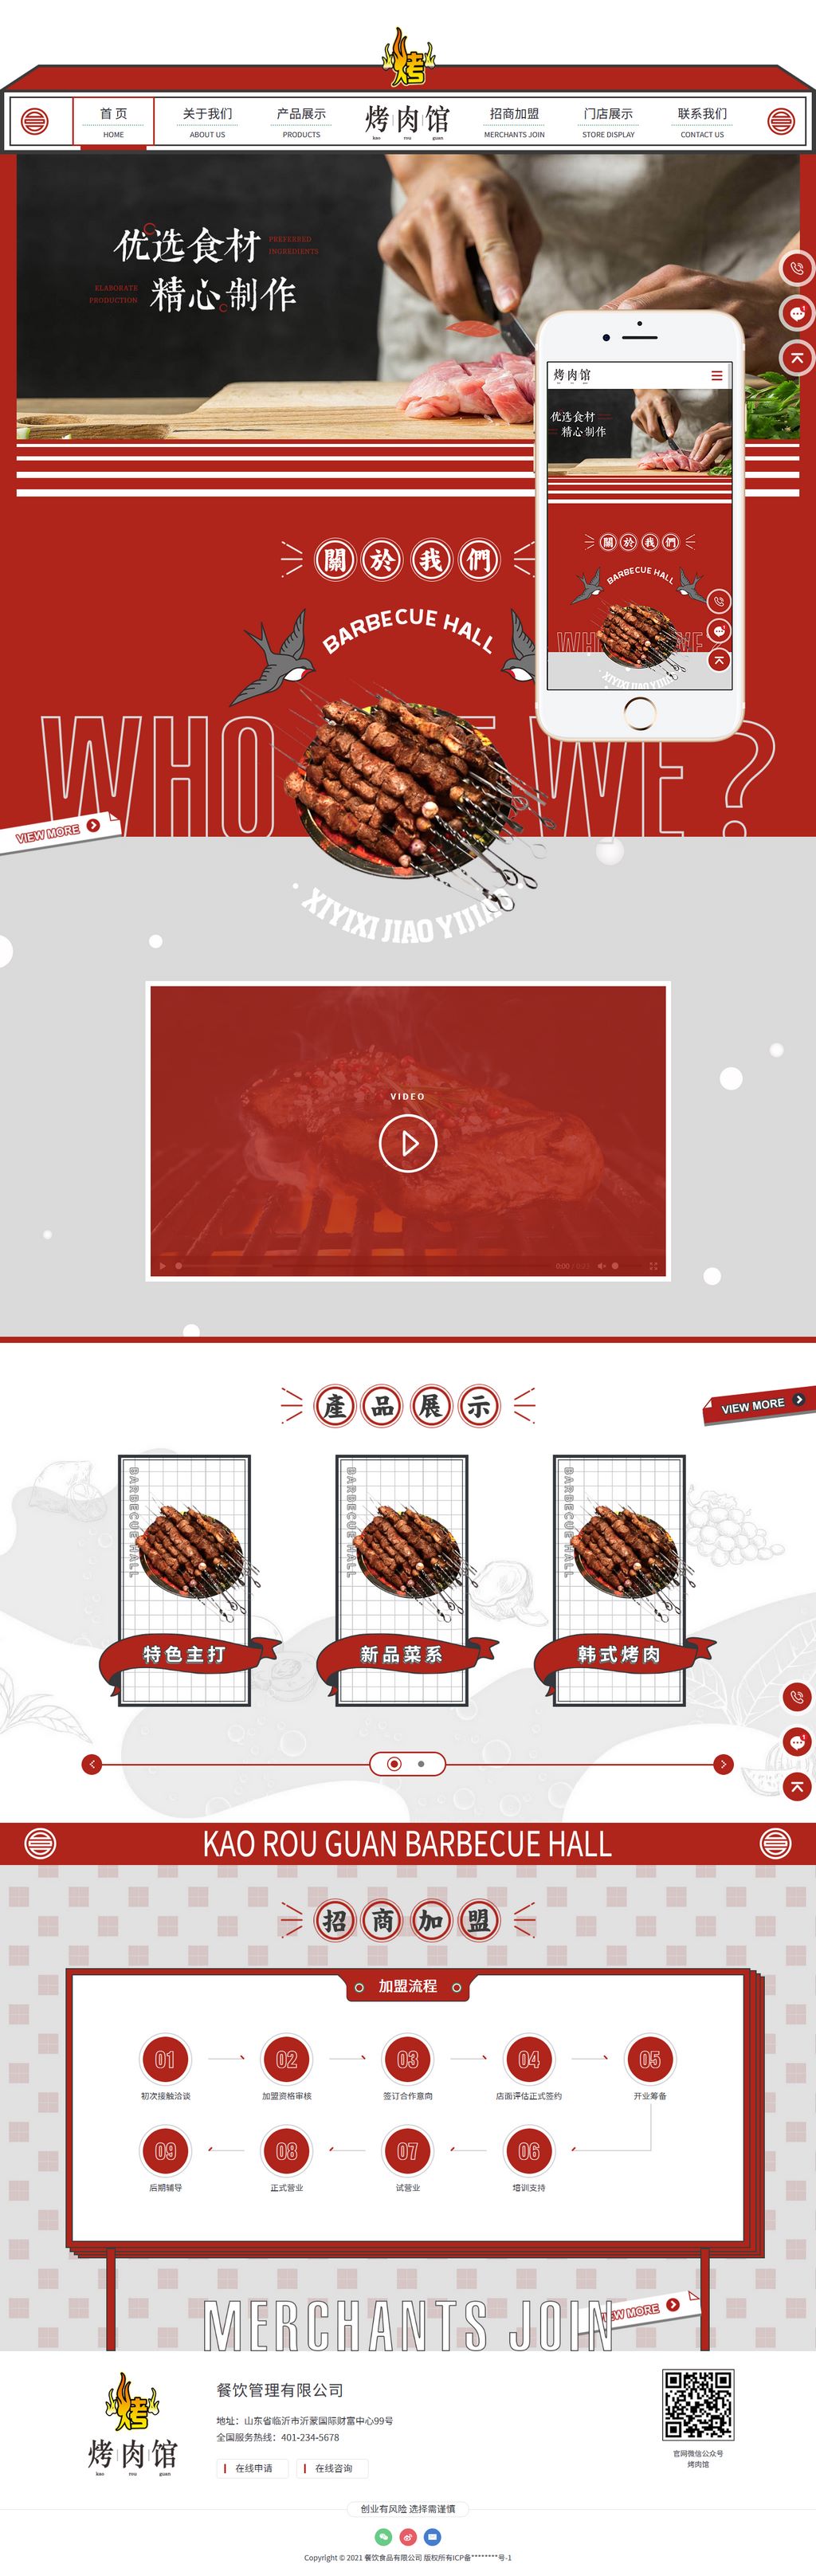 大气红色响应式烤肉餐饮食品加盟网站Wordpress企业模板(自适应PC+手机站)截图